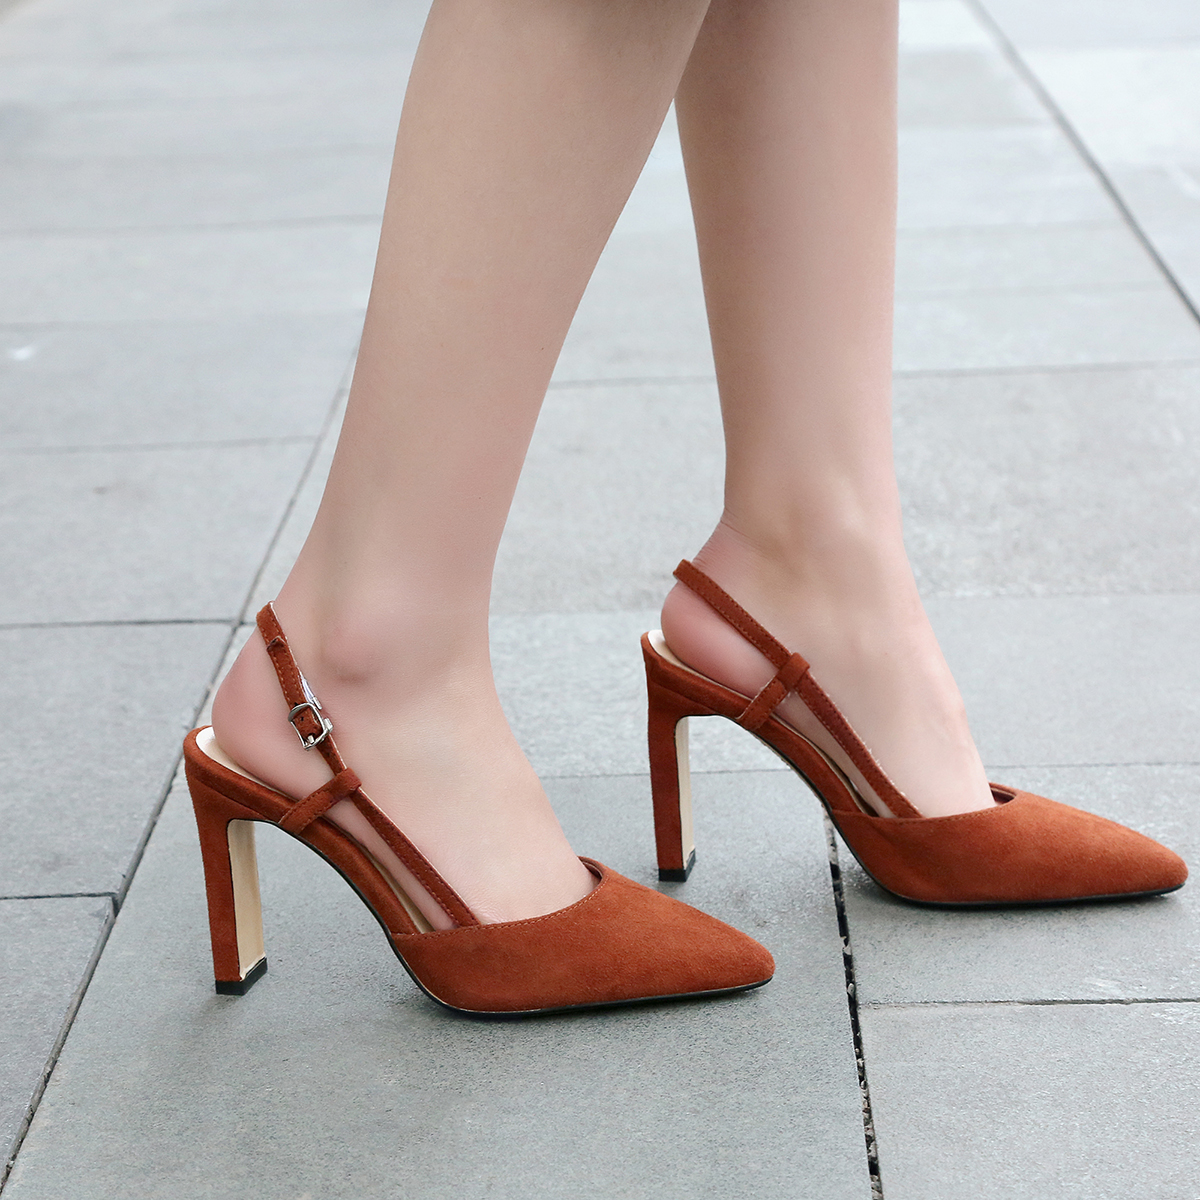 9cm heels